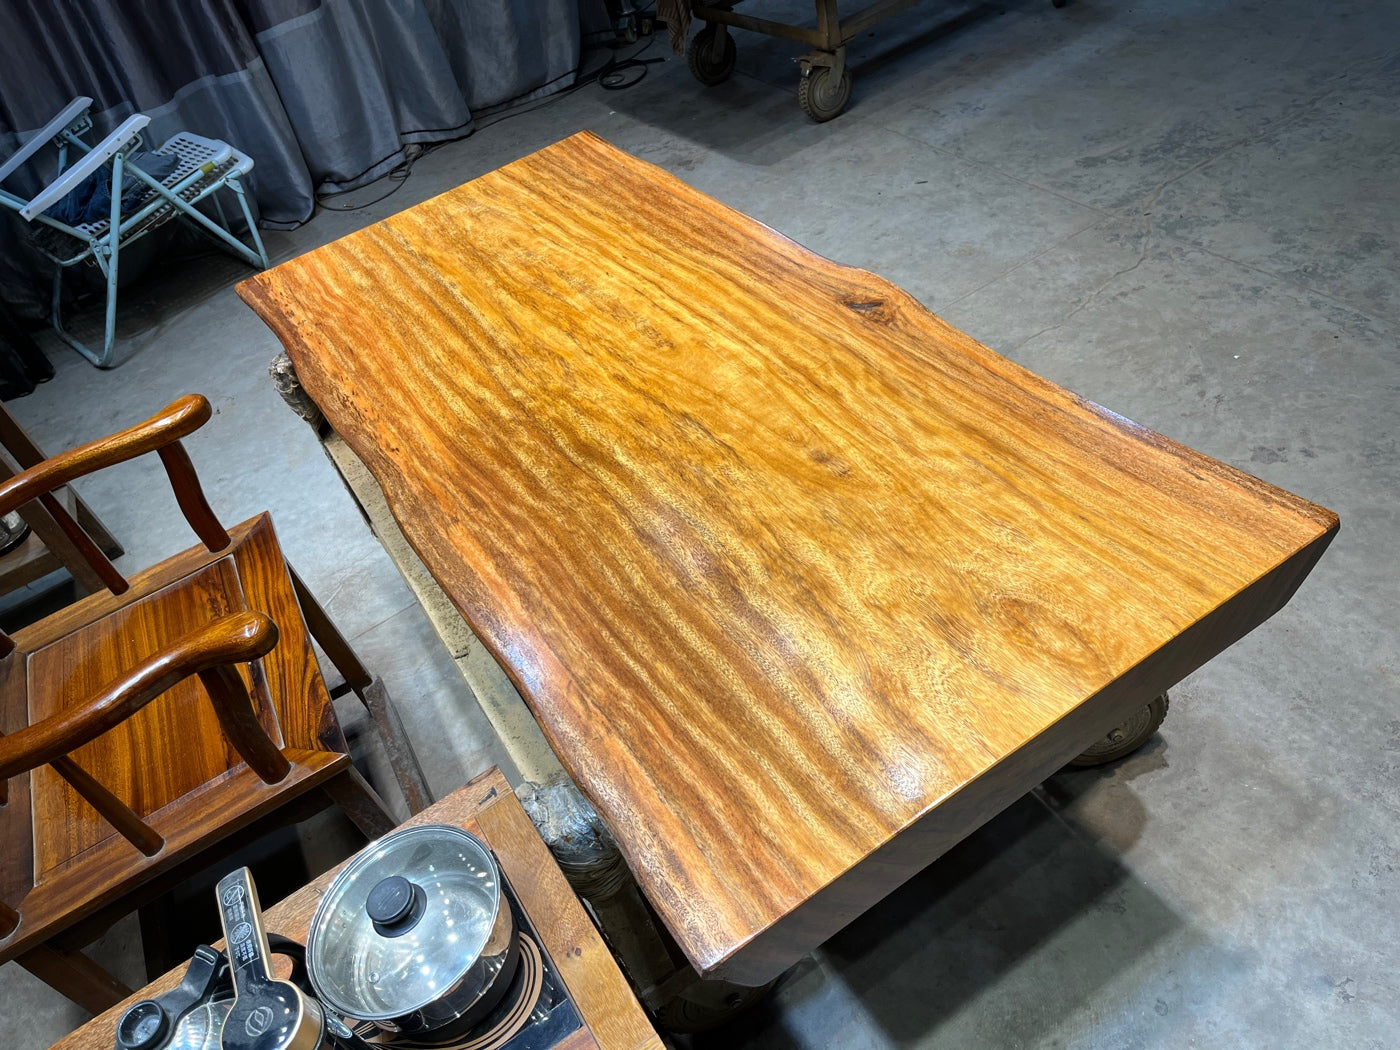 لوح سطح طاولة رخامية، لوح خشب، لوح تالي، طاولة تالي، لوح خشب تالي